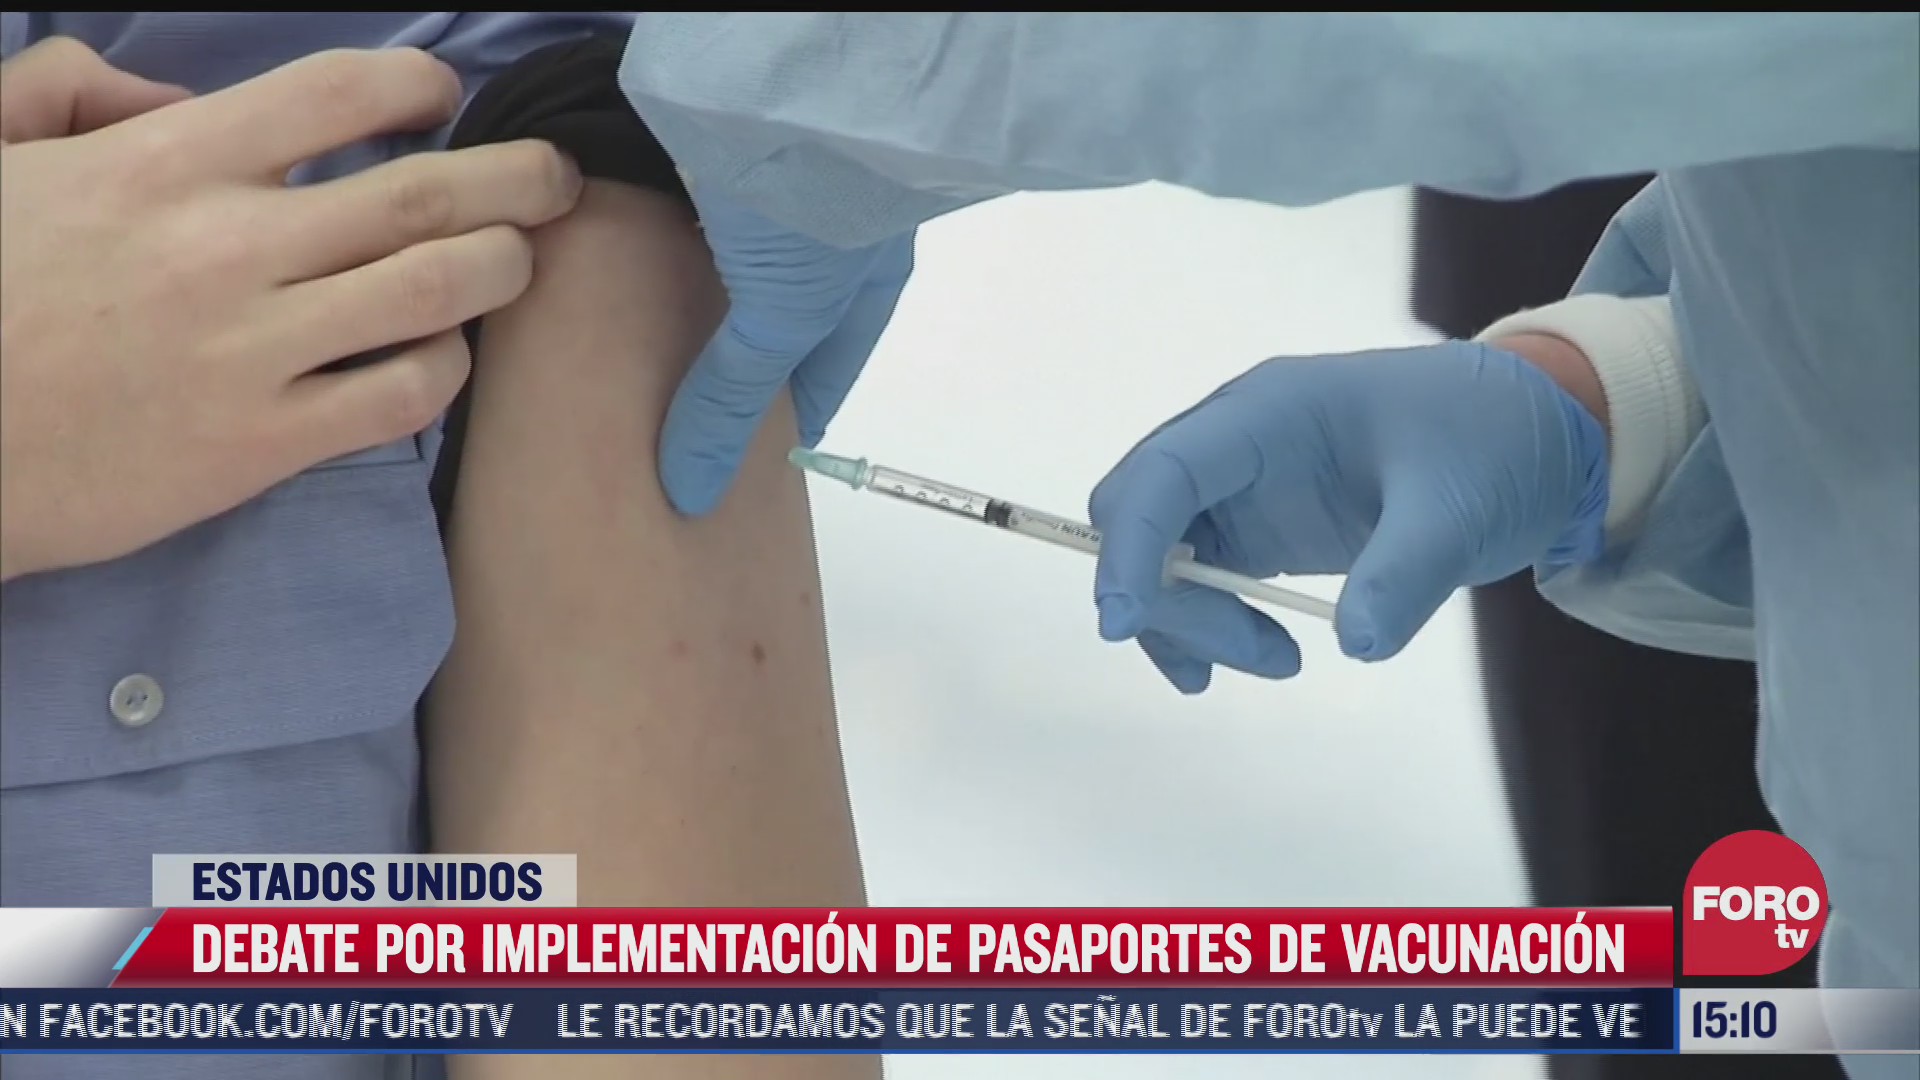 debate por pasaportes de vacunacion en estados unidos